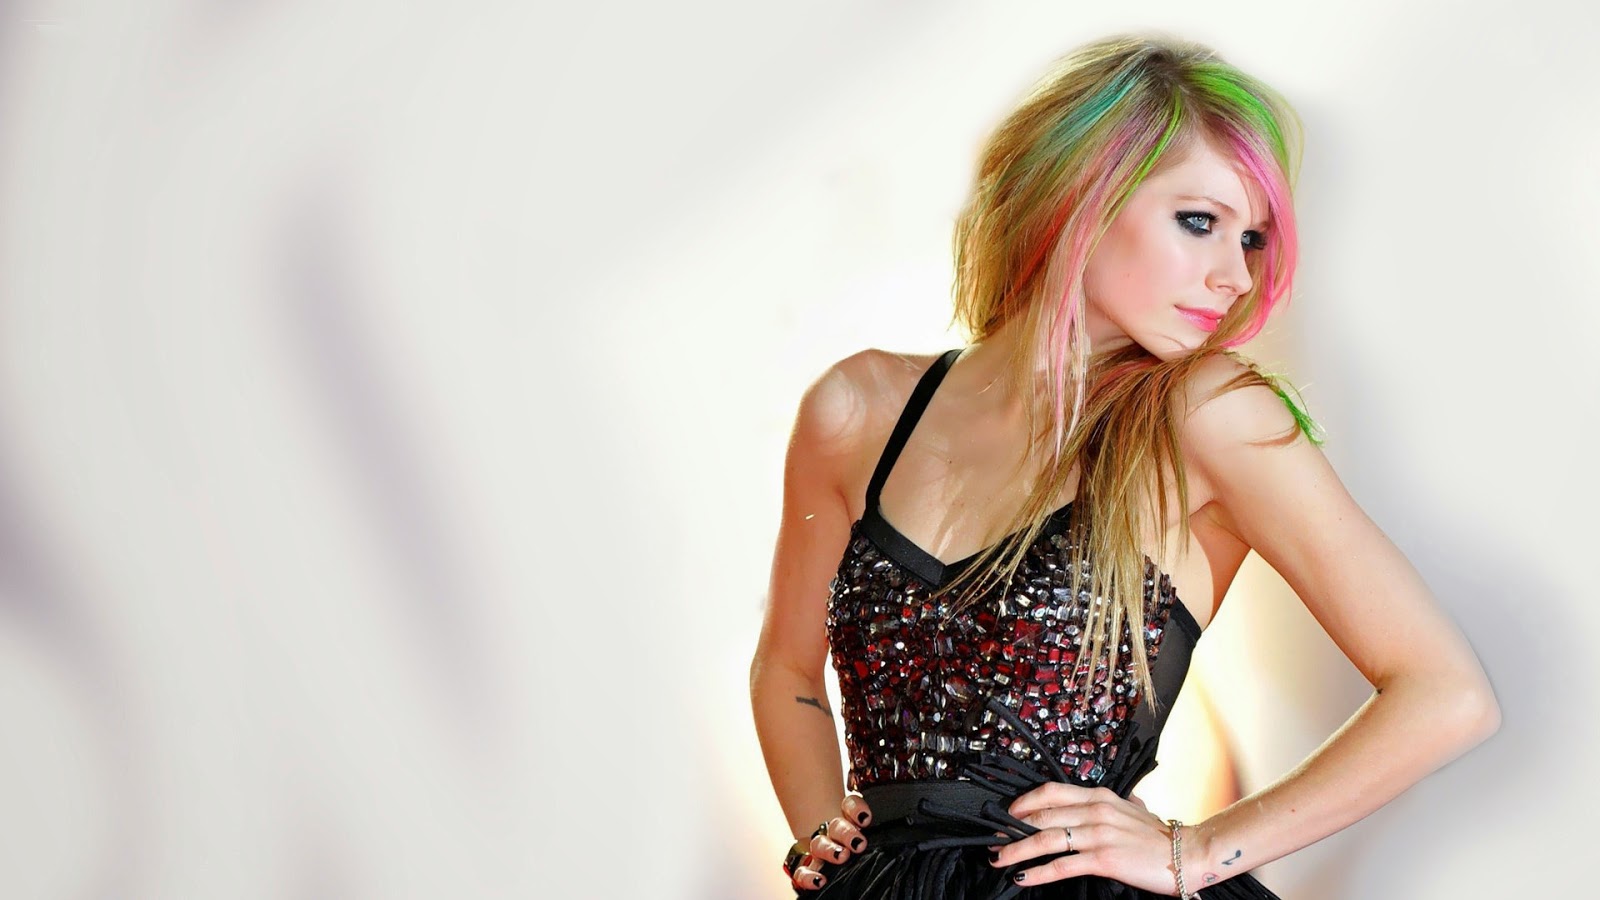 Avril Lavigne HD Wallpaper Unique